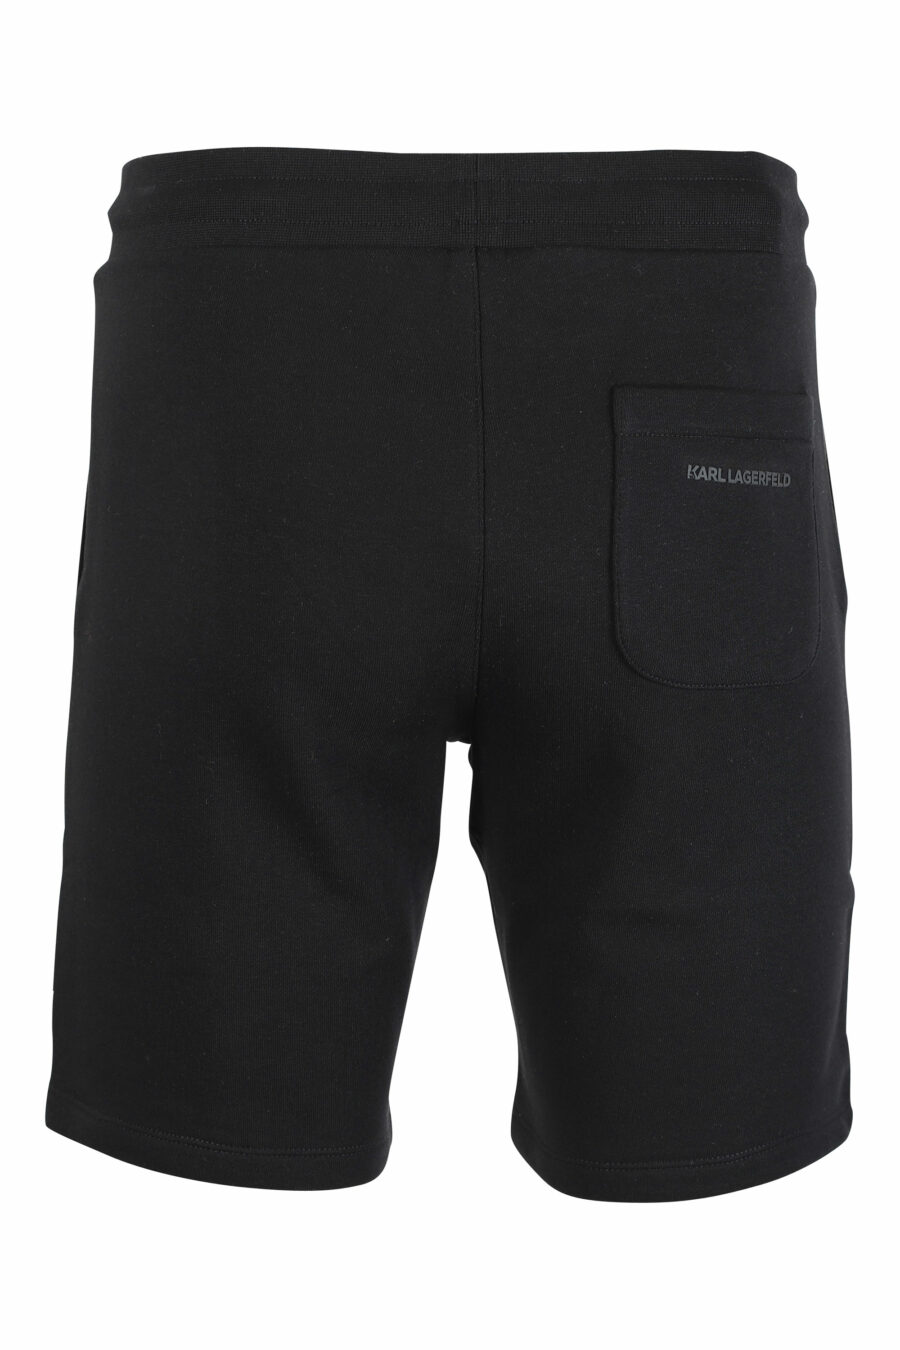 Pantalón de chándal negro corto con minilogo "rue st guillaume" - IMG 9512